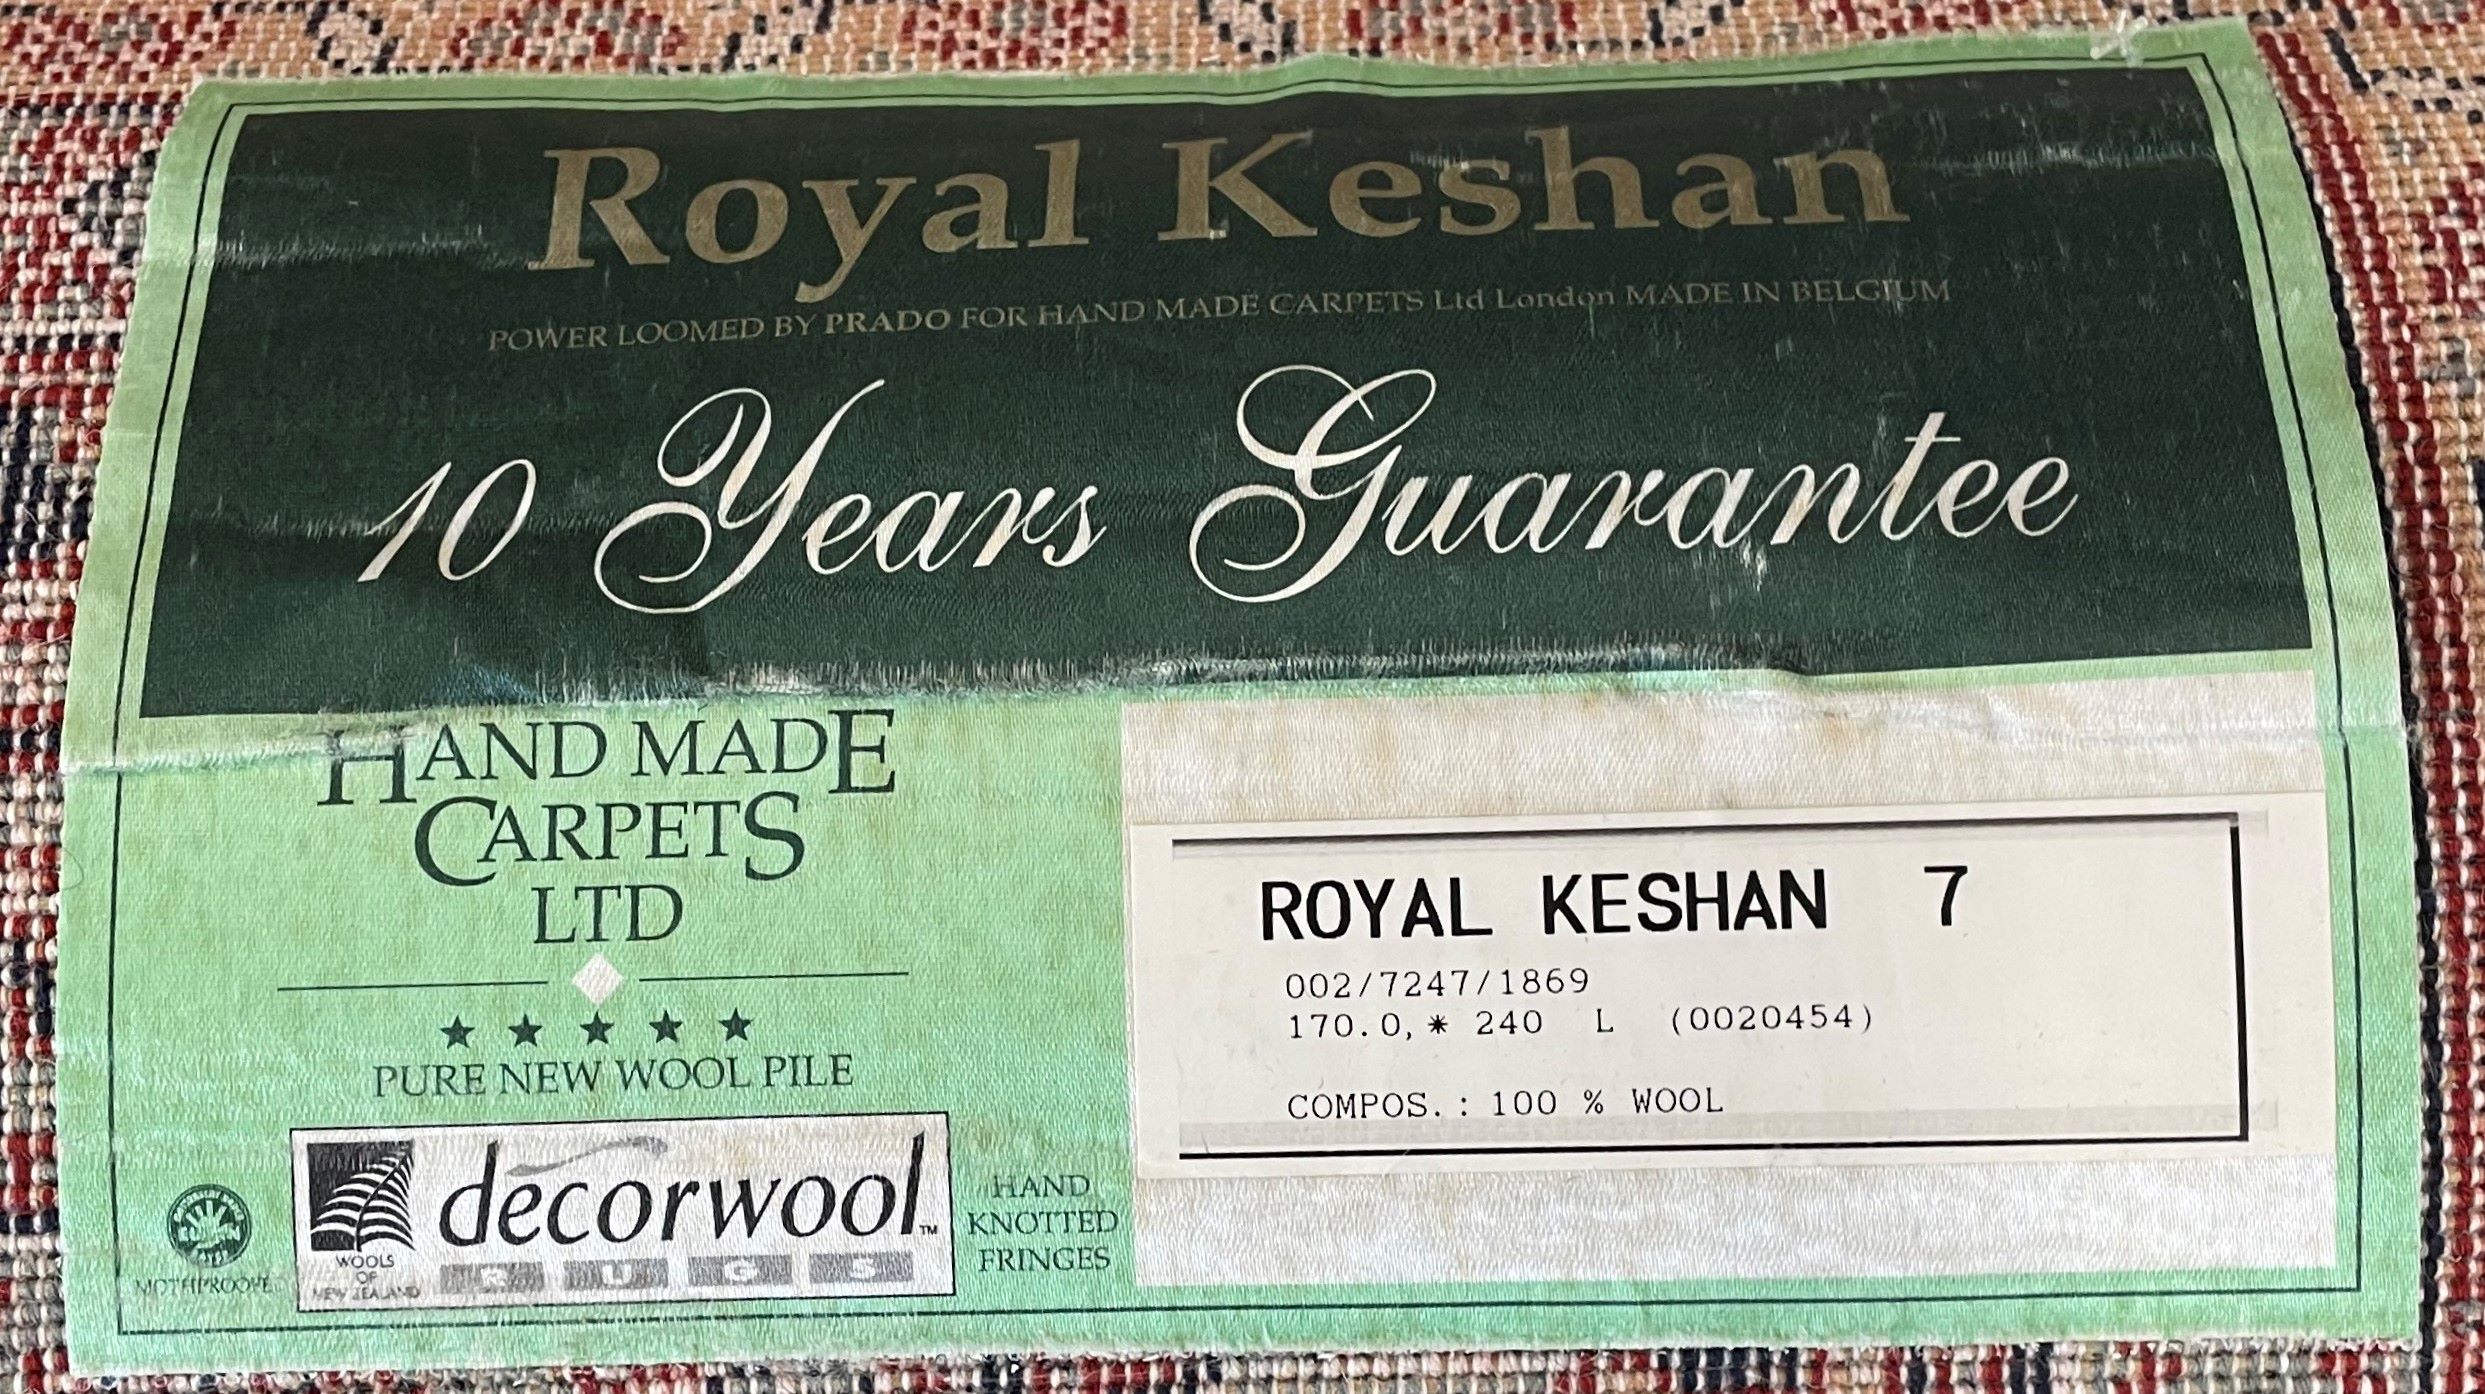 Royal Keshan wool carpet 240cm by 170cm - Image 2 of 2